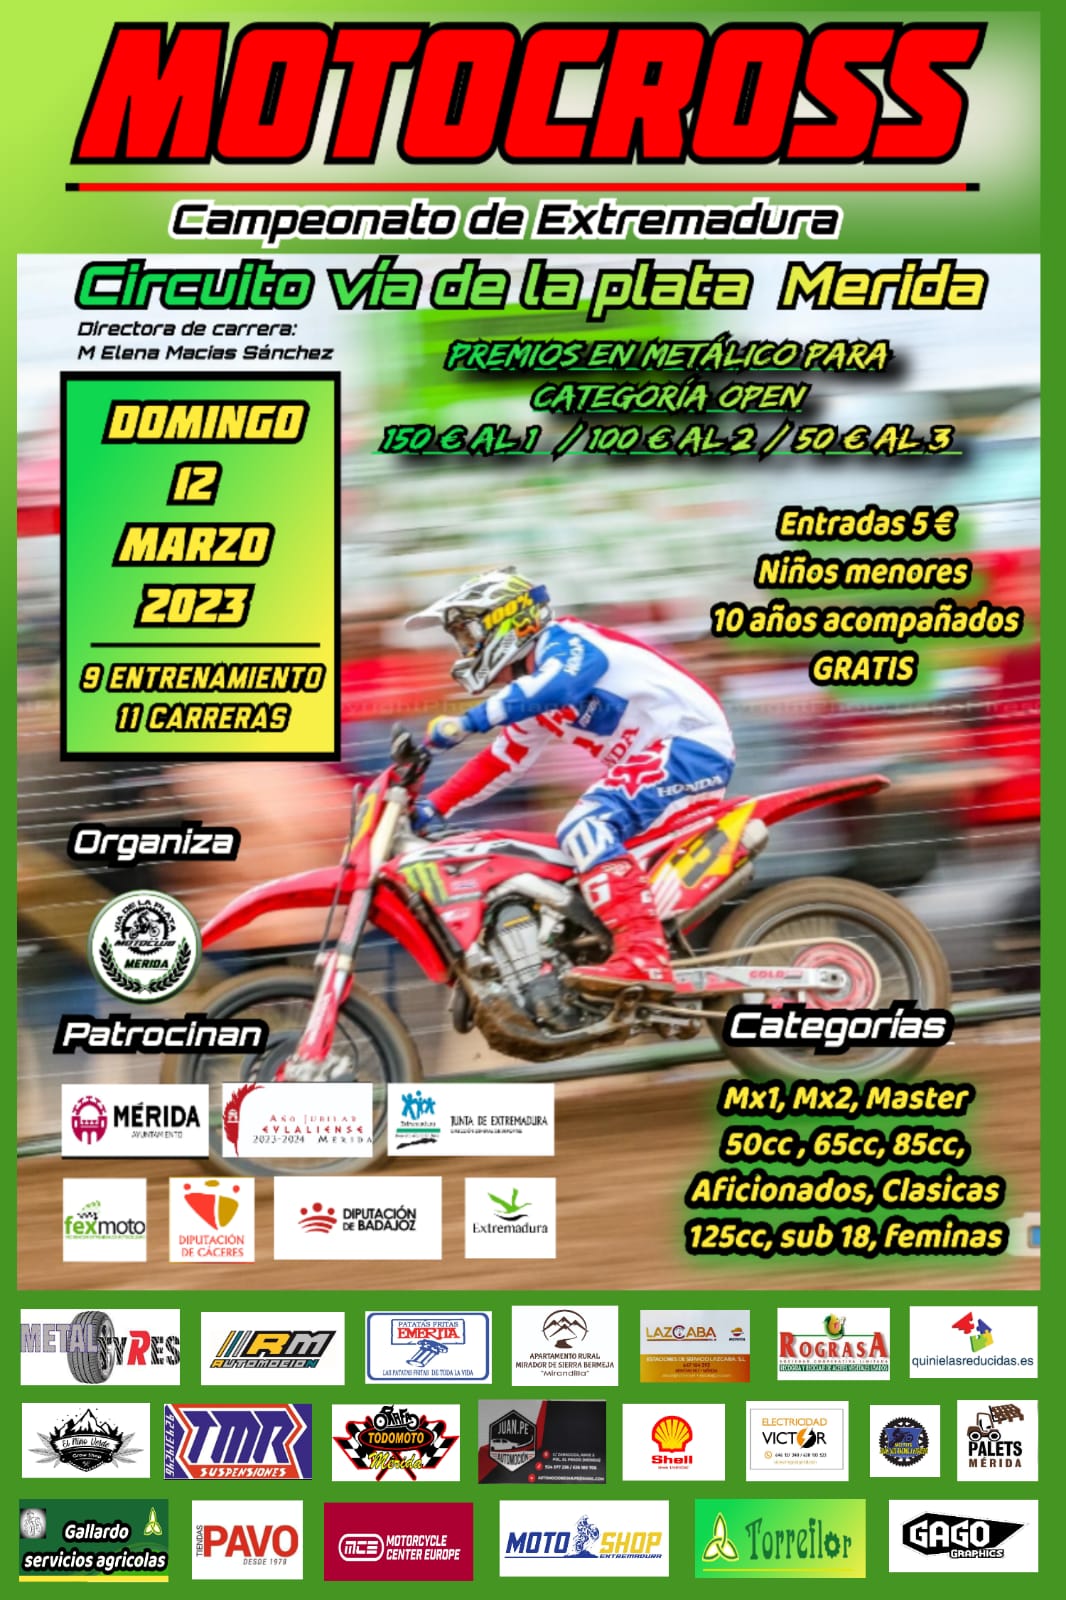 Motocros Campeonato de Extremadura